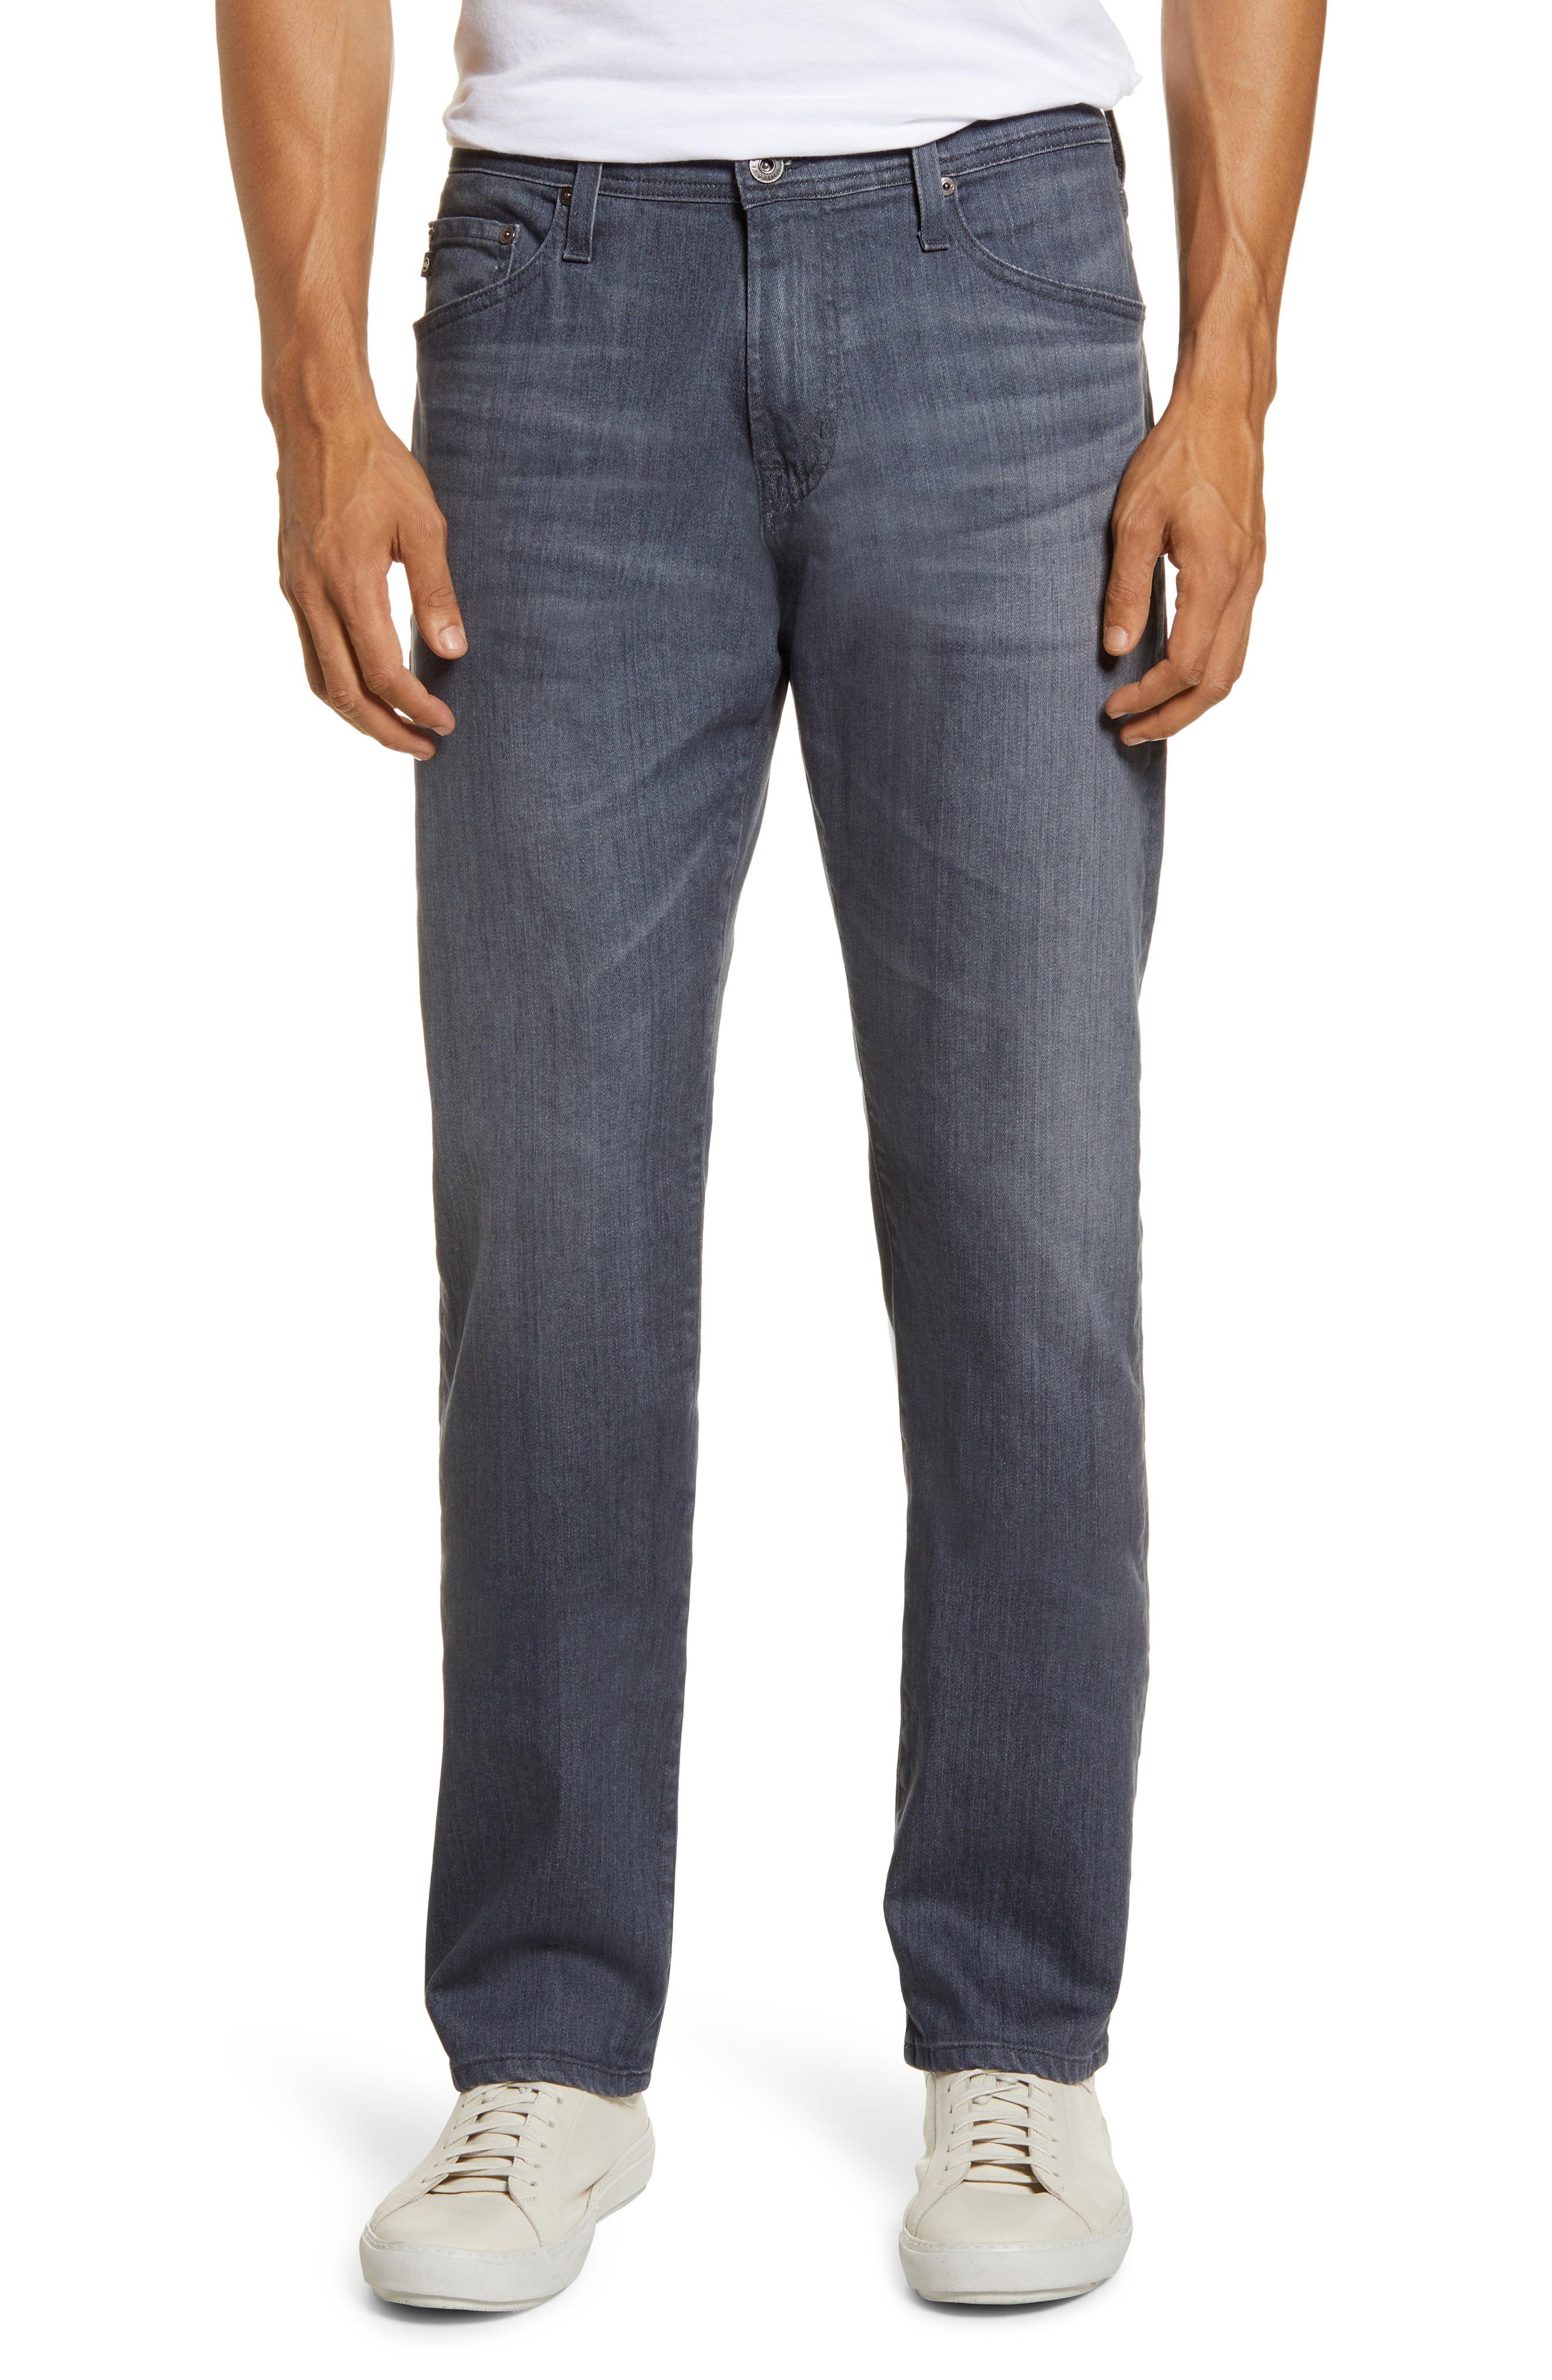 AG Jeans Denim Everett Slim Straight Leg Jeans in Blue for Men - Lyst